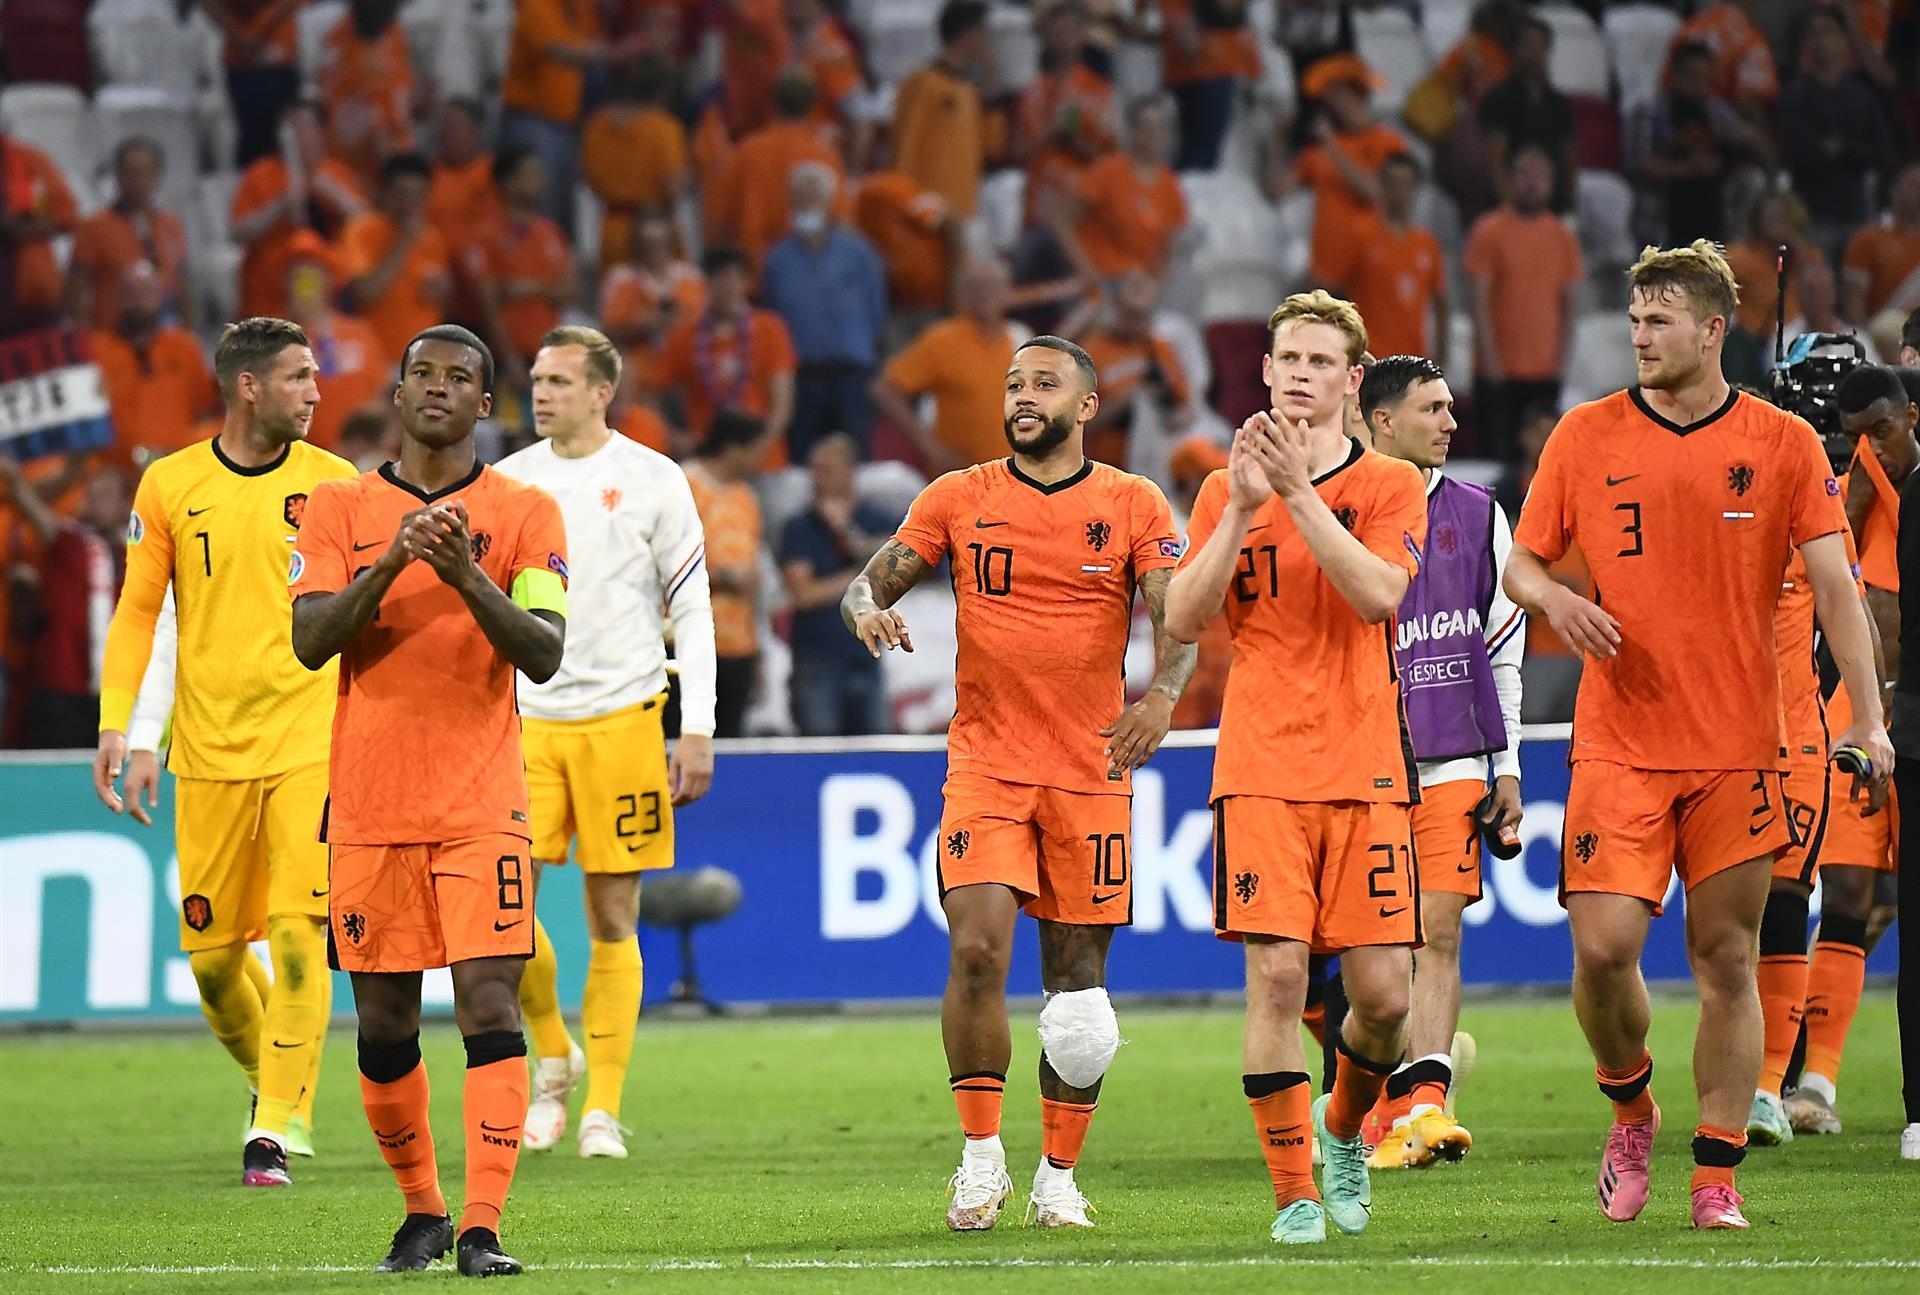 Países Bajos venció a Austria - noticiacn